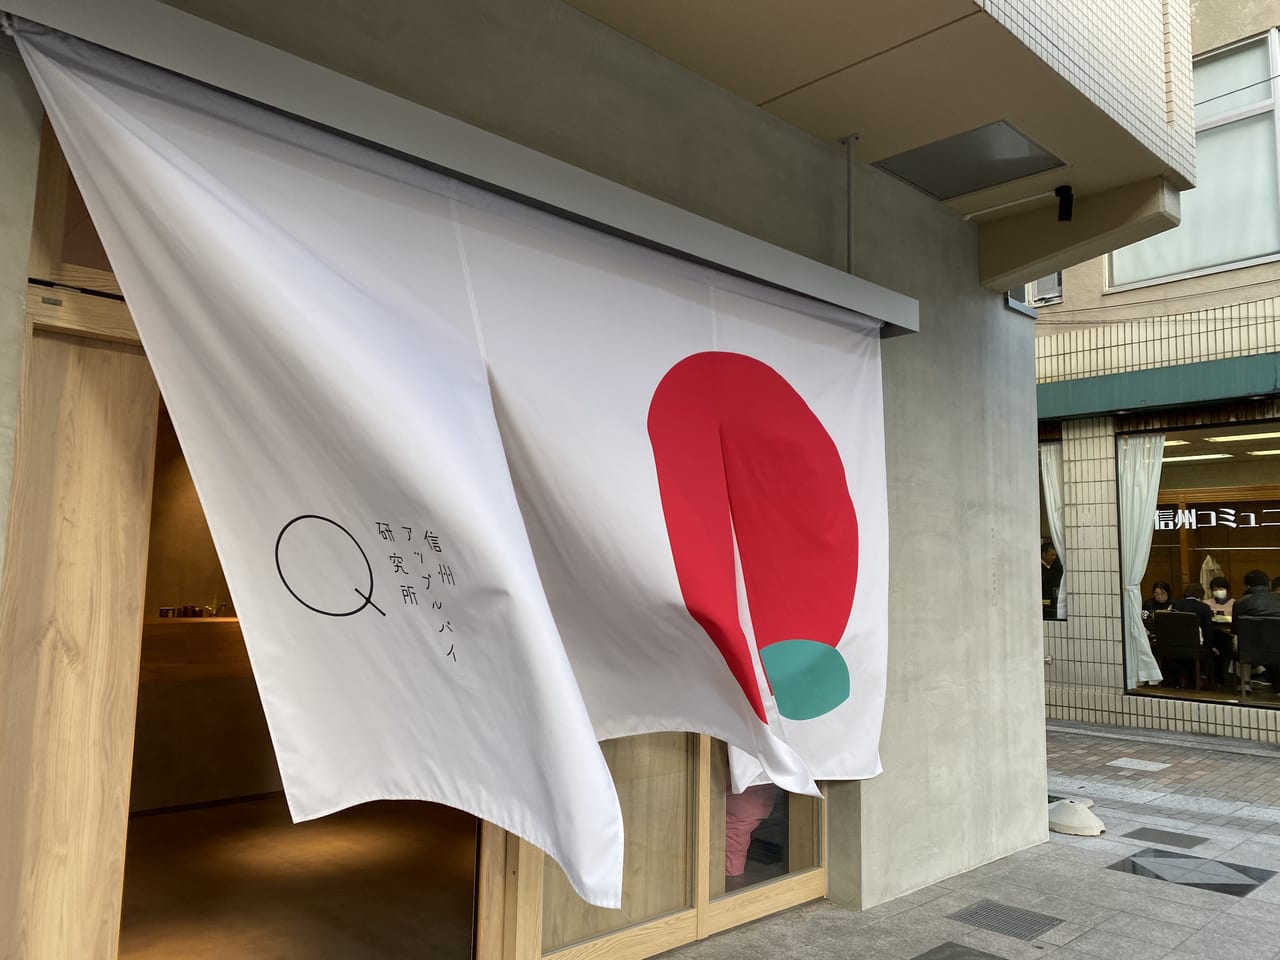 上田市のアップルパイ専門店「アップルパイ研究所」